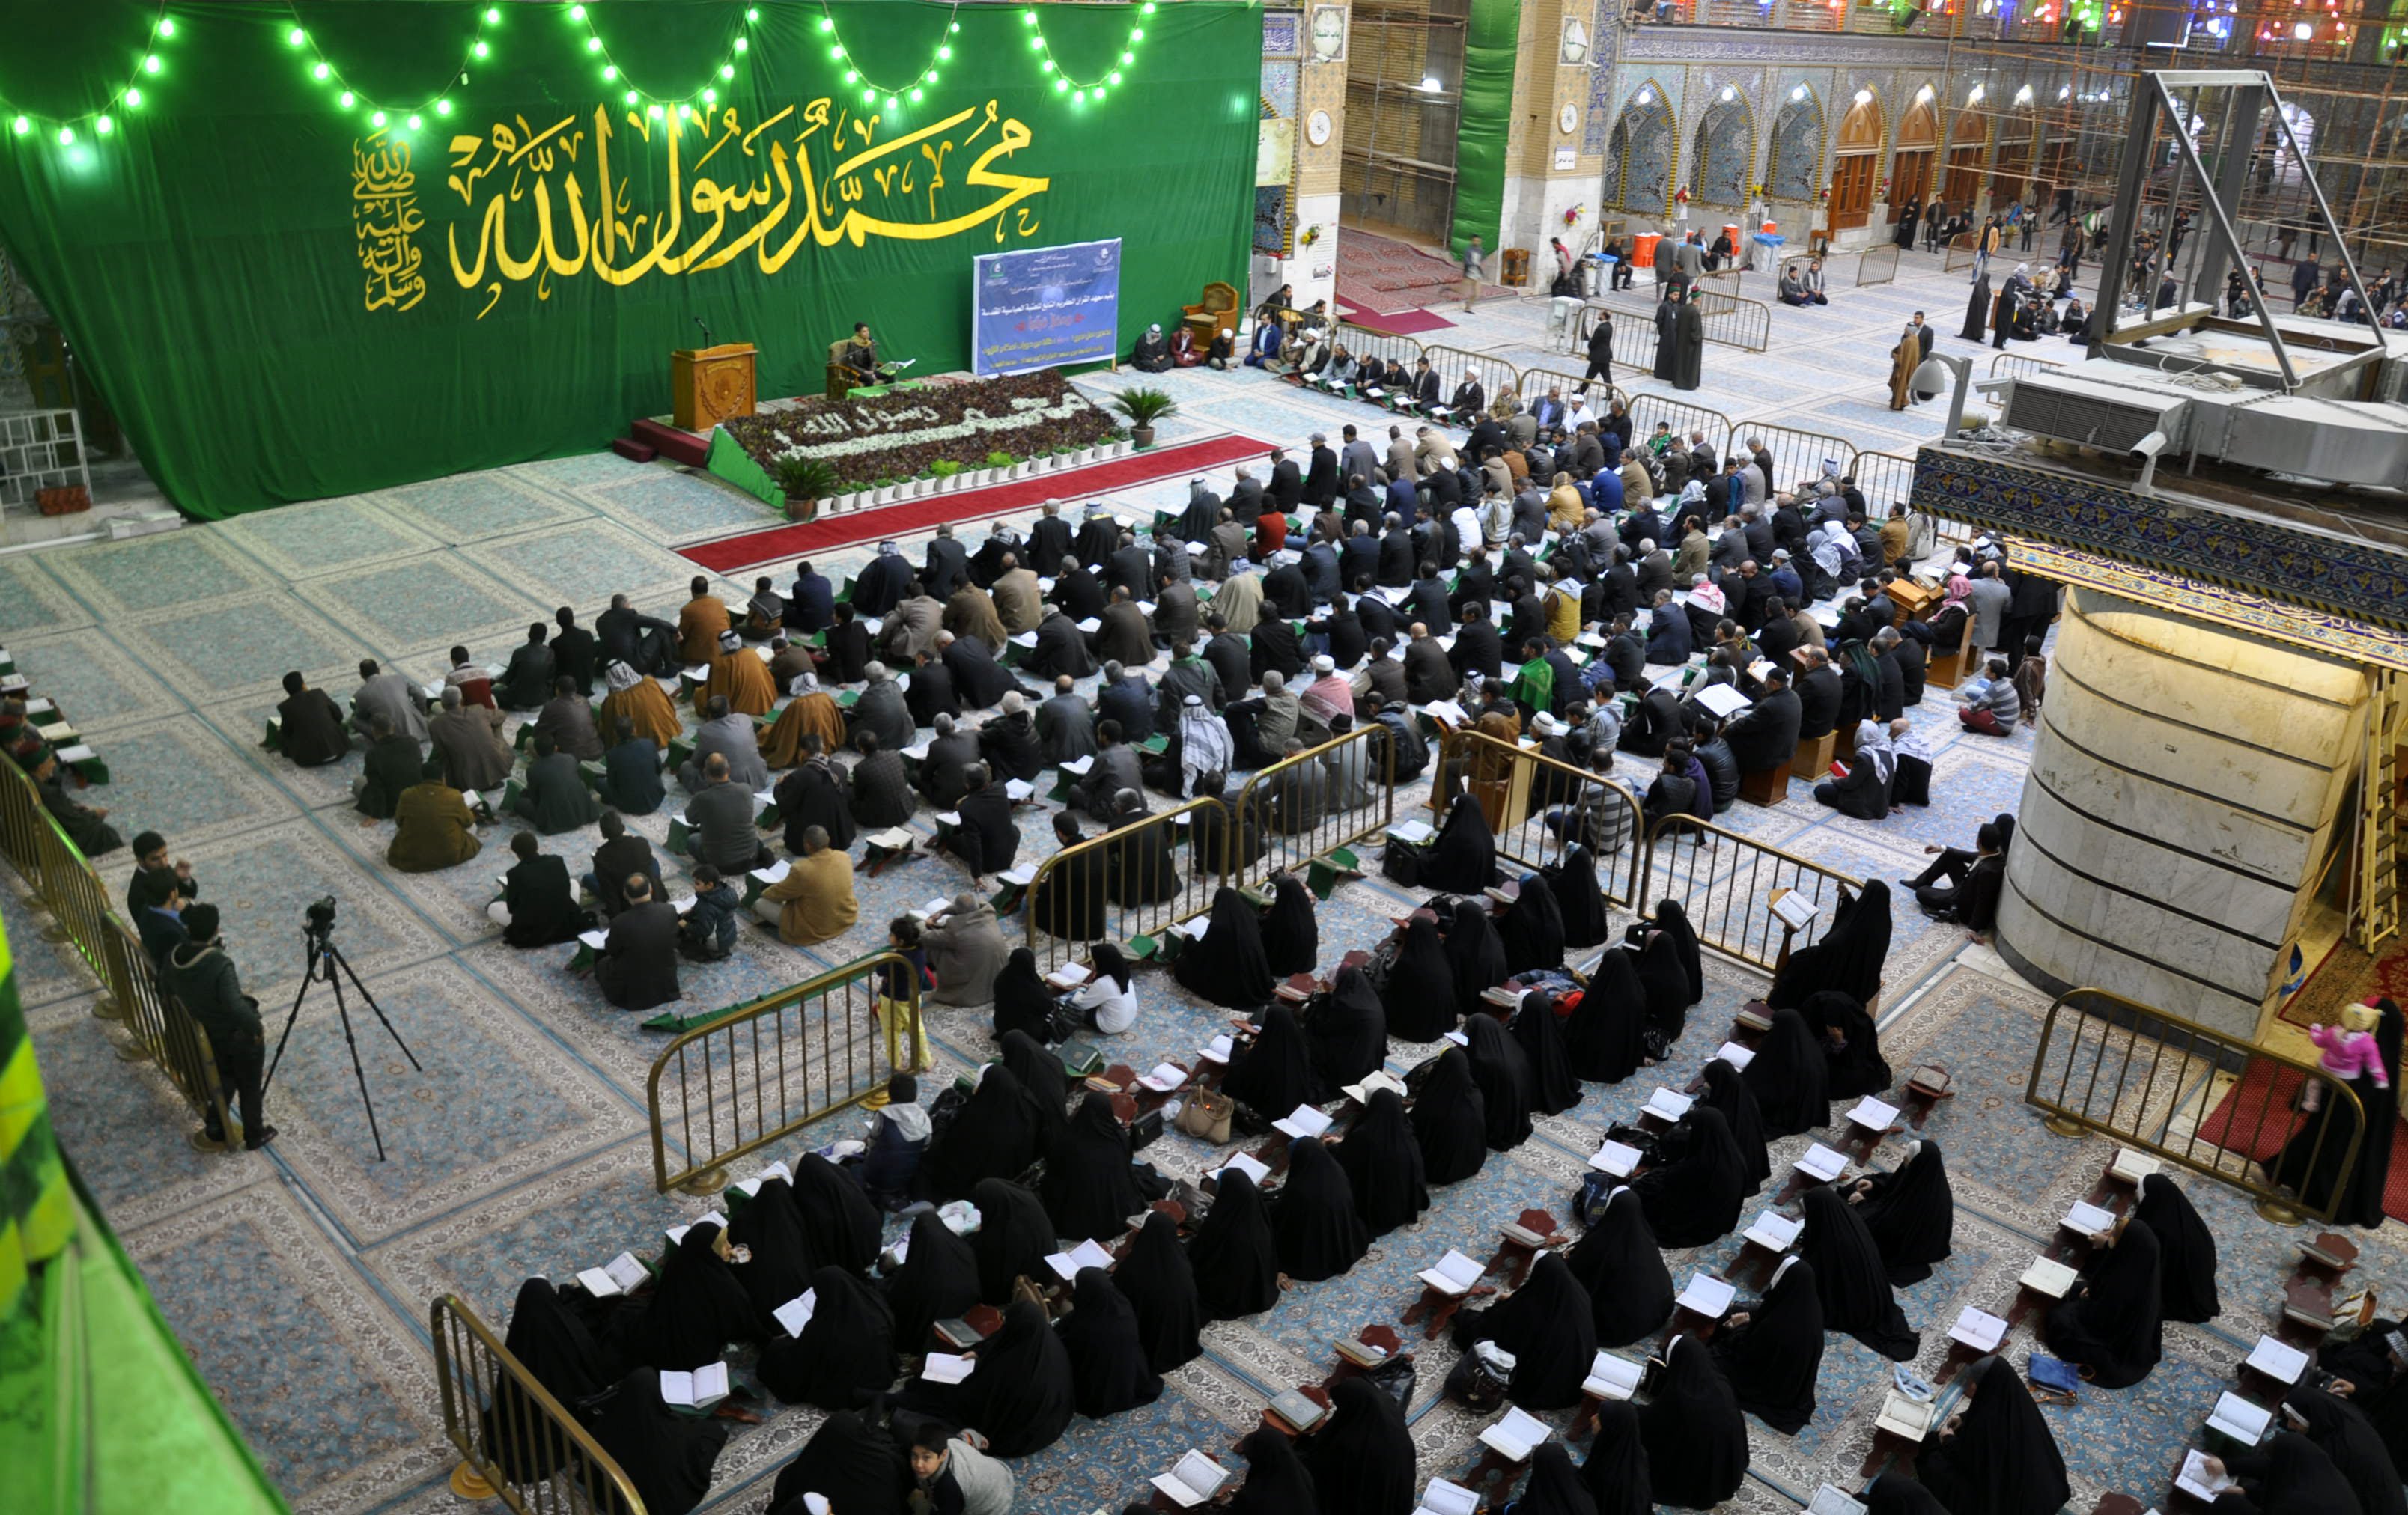 تيمّناً بذكرى المولد المبارك: معهدُ القرآن الكريم في العتبة العبّاسية المقدّسة يحتفي بتخرّج(500) طالب وطالبة.